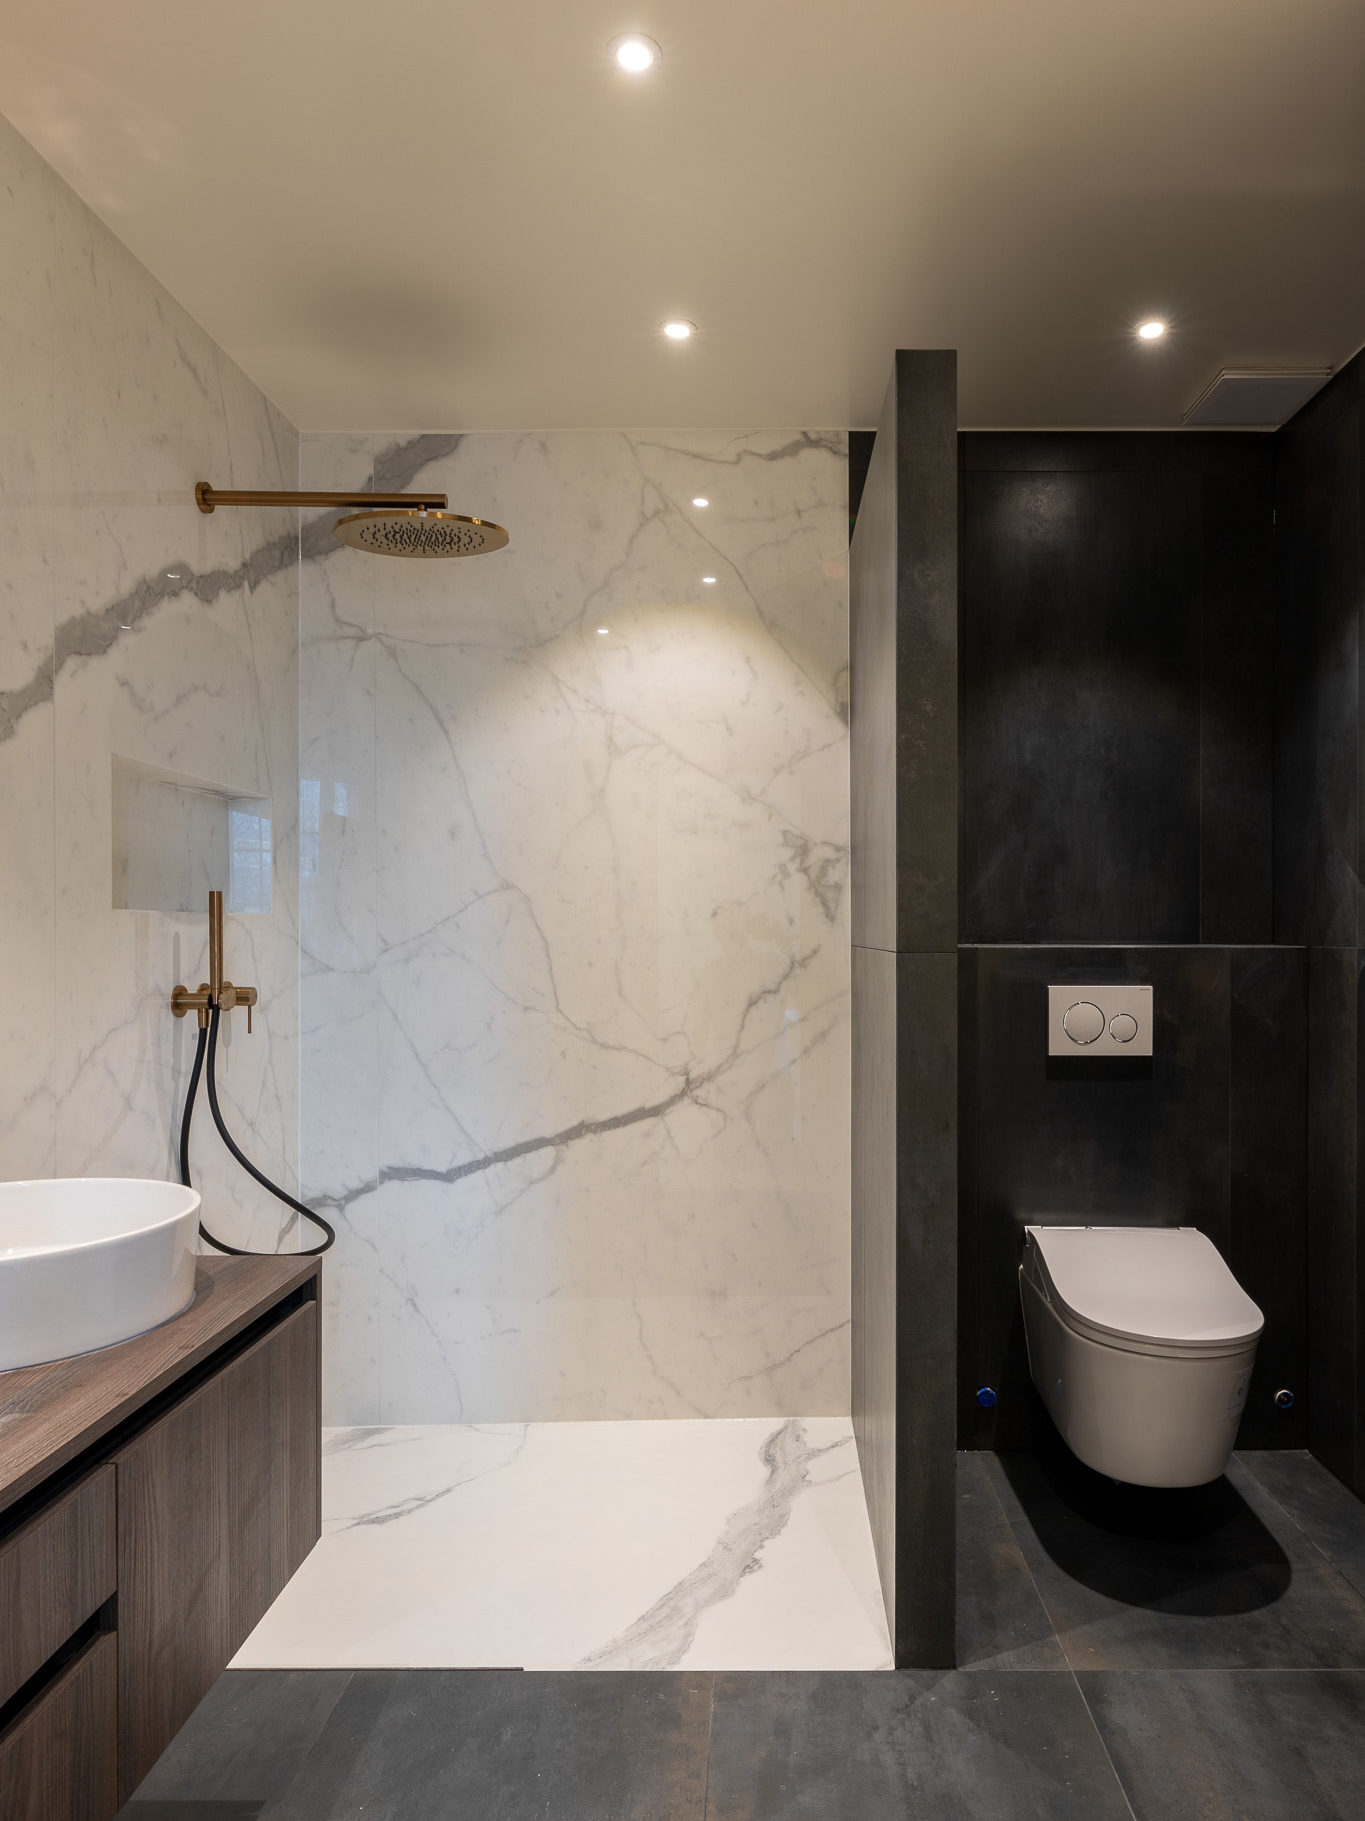 Salle de bains rénovée avec différenciation des espaces douches et WC. Carrelage imitation marbre pour la douche italienne et carrelage noir pour les WC.